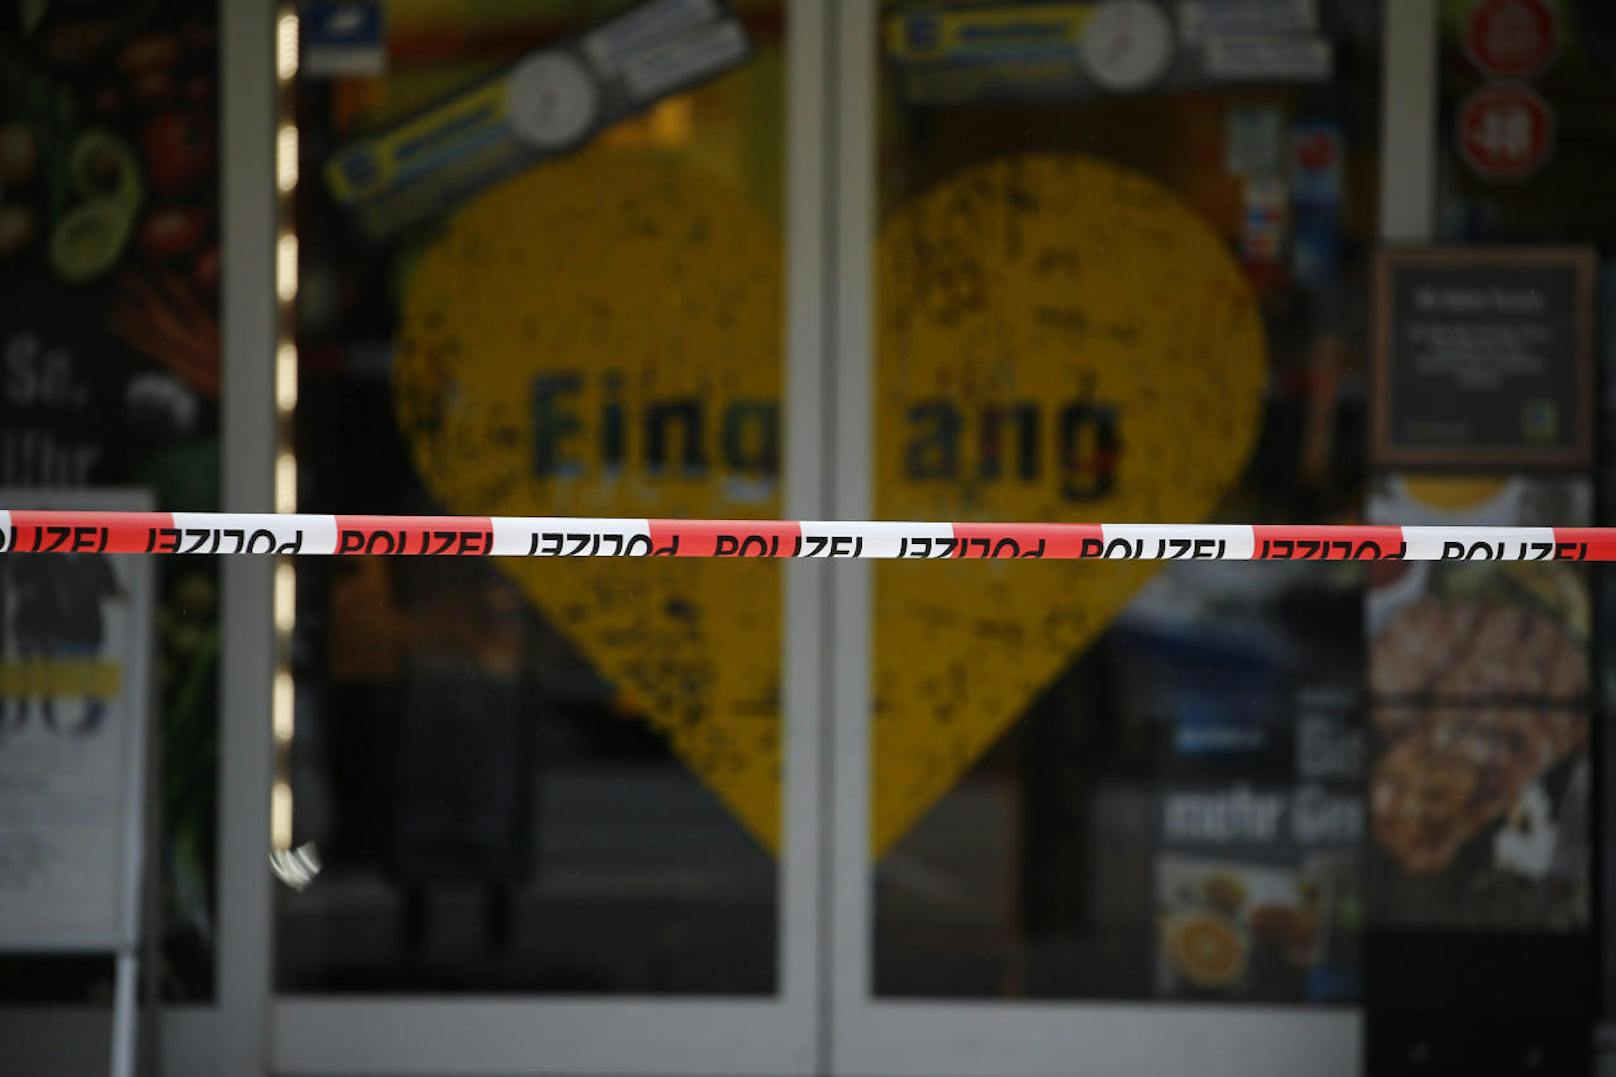 Ein Angreifer stach auf Kunden eines Hamburger Supermarkts ein. Er wurde festgenommen.